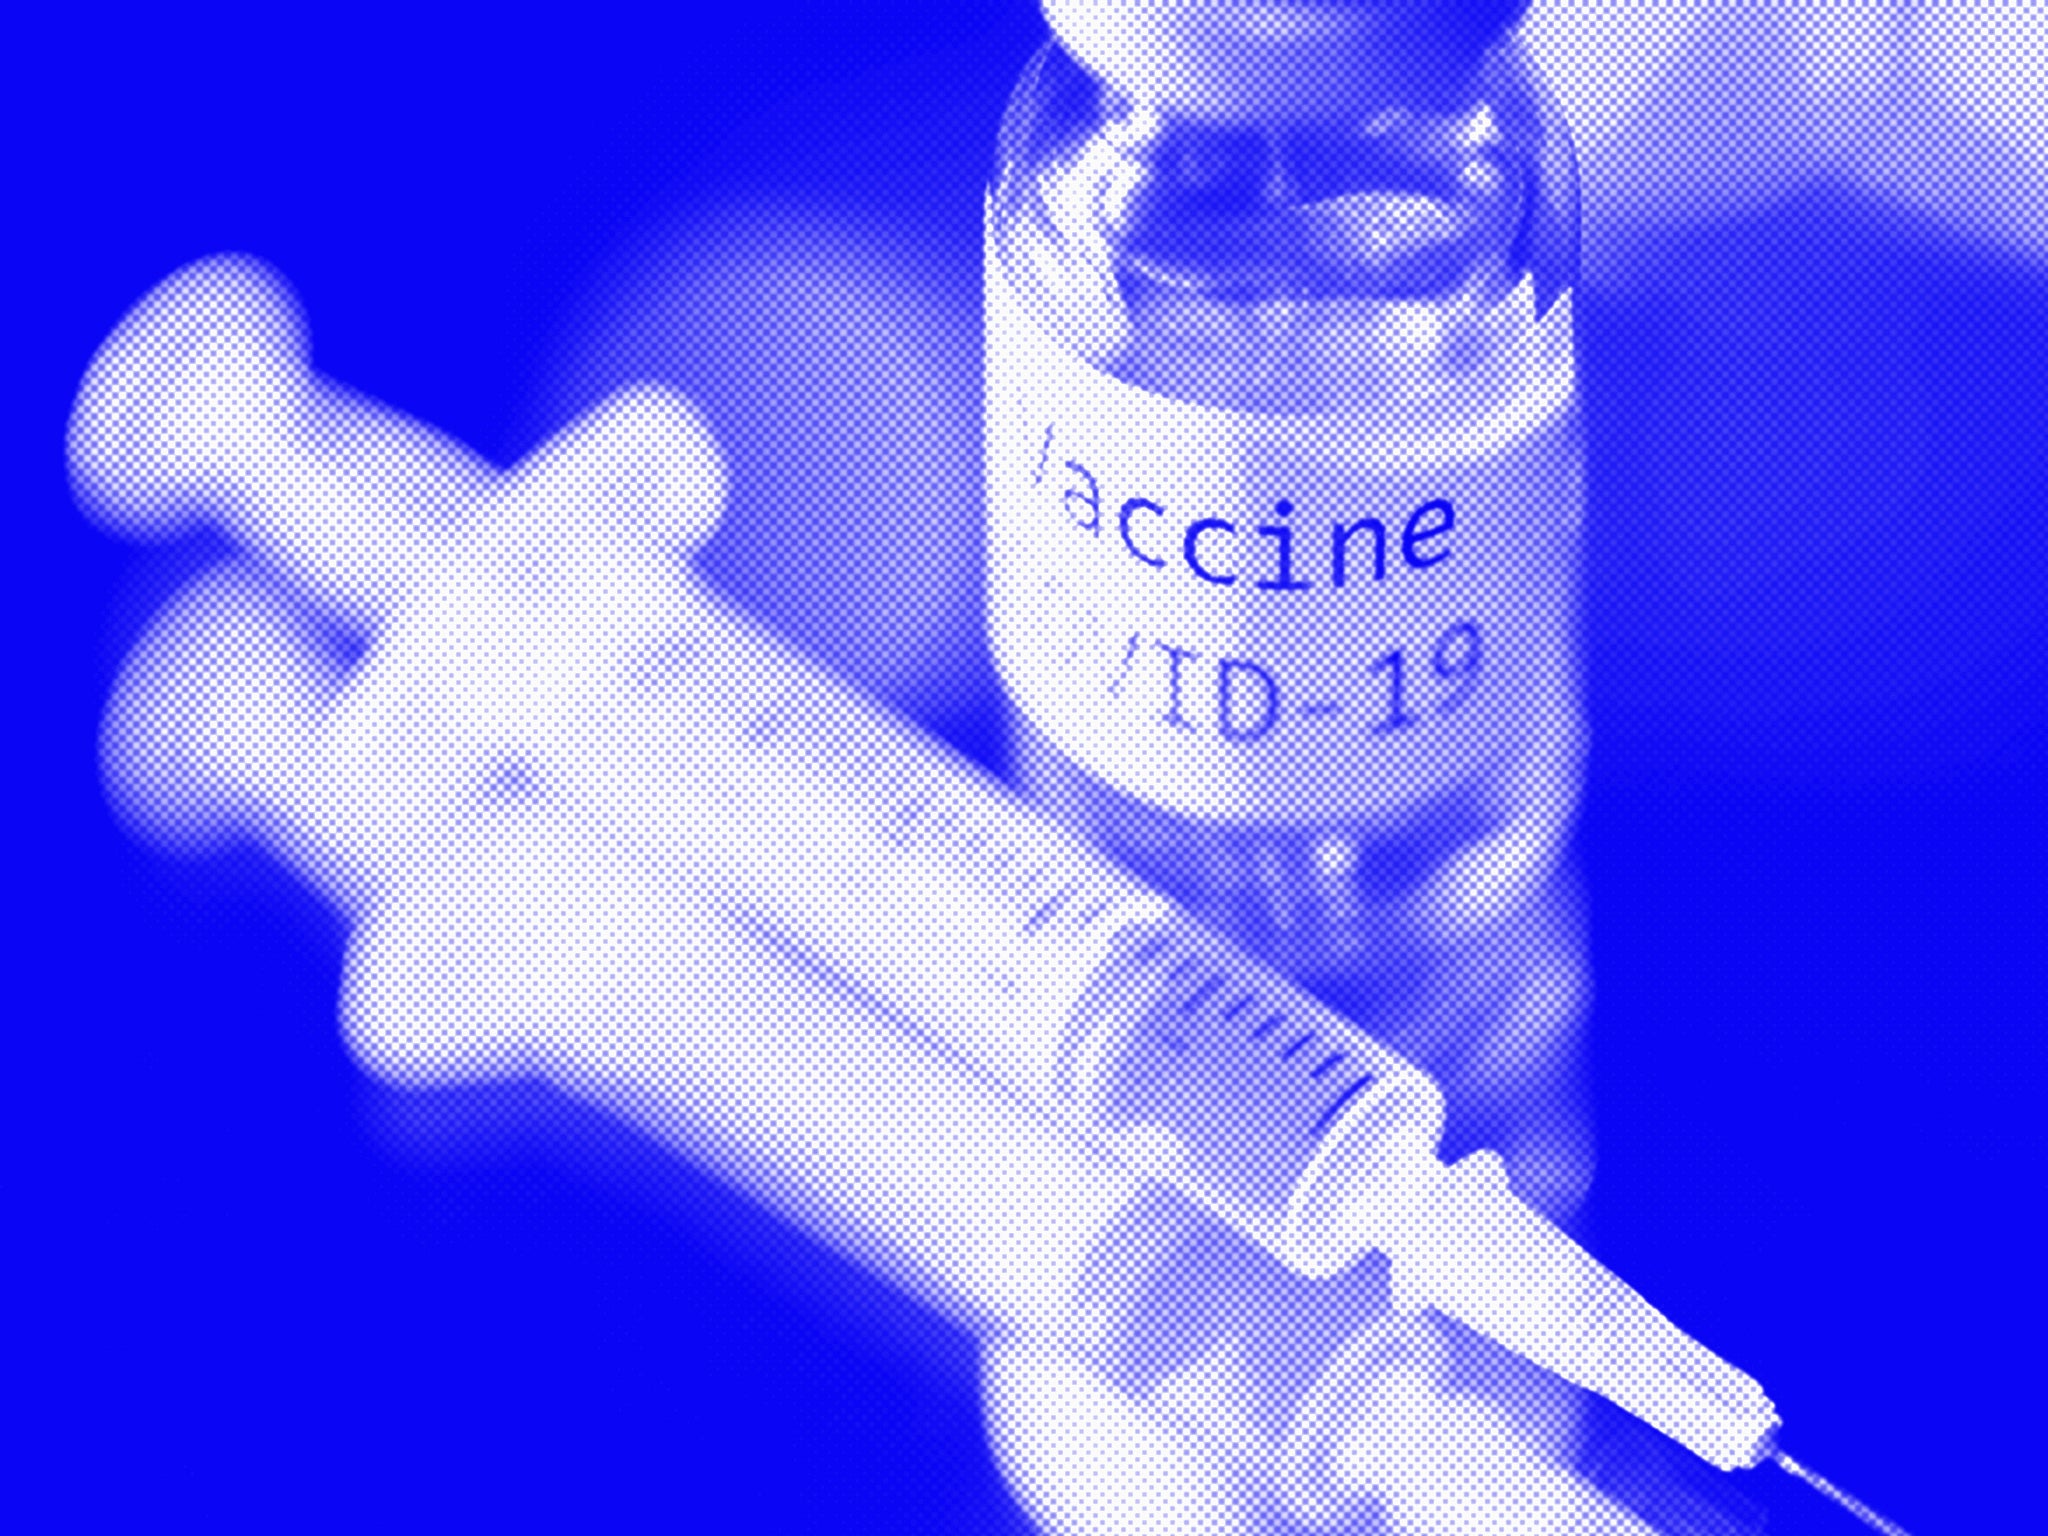 Κορωνοϊός Ηνωμένο Βασίλειο: Νέα έρευνα εξετάζει την ανάμειξη διαφορετικών εμβολίων για την ανοσοποίηση έναντι του κορωνοϊού